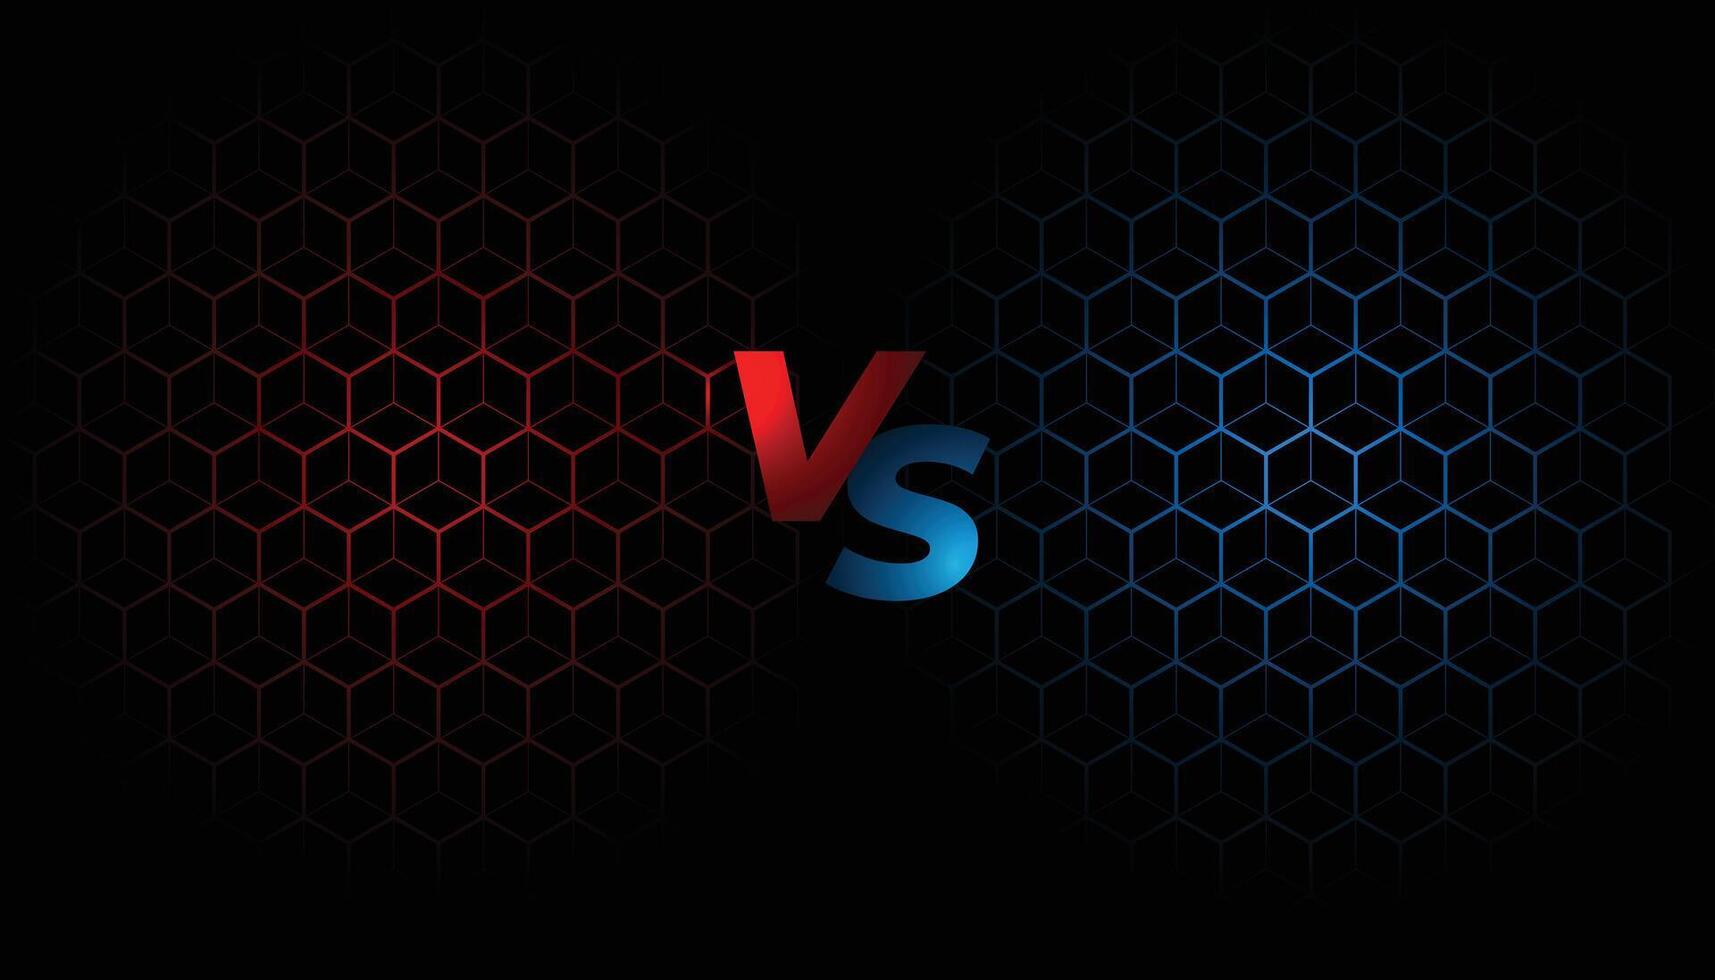 battle screen versus vs background template design vector